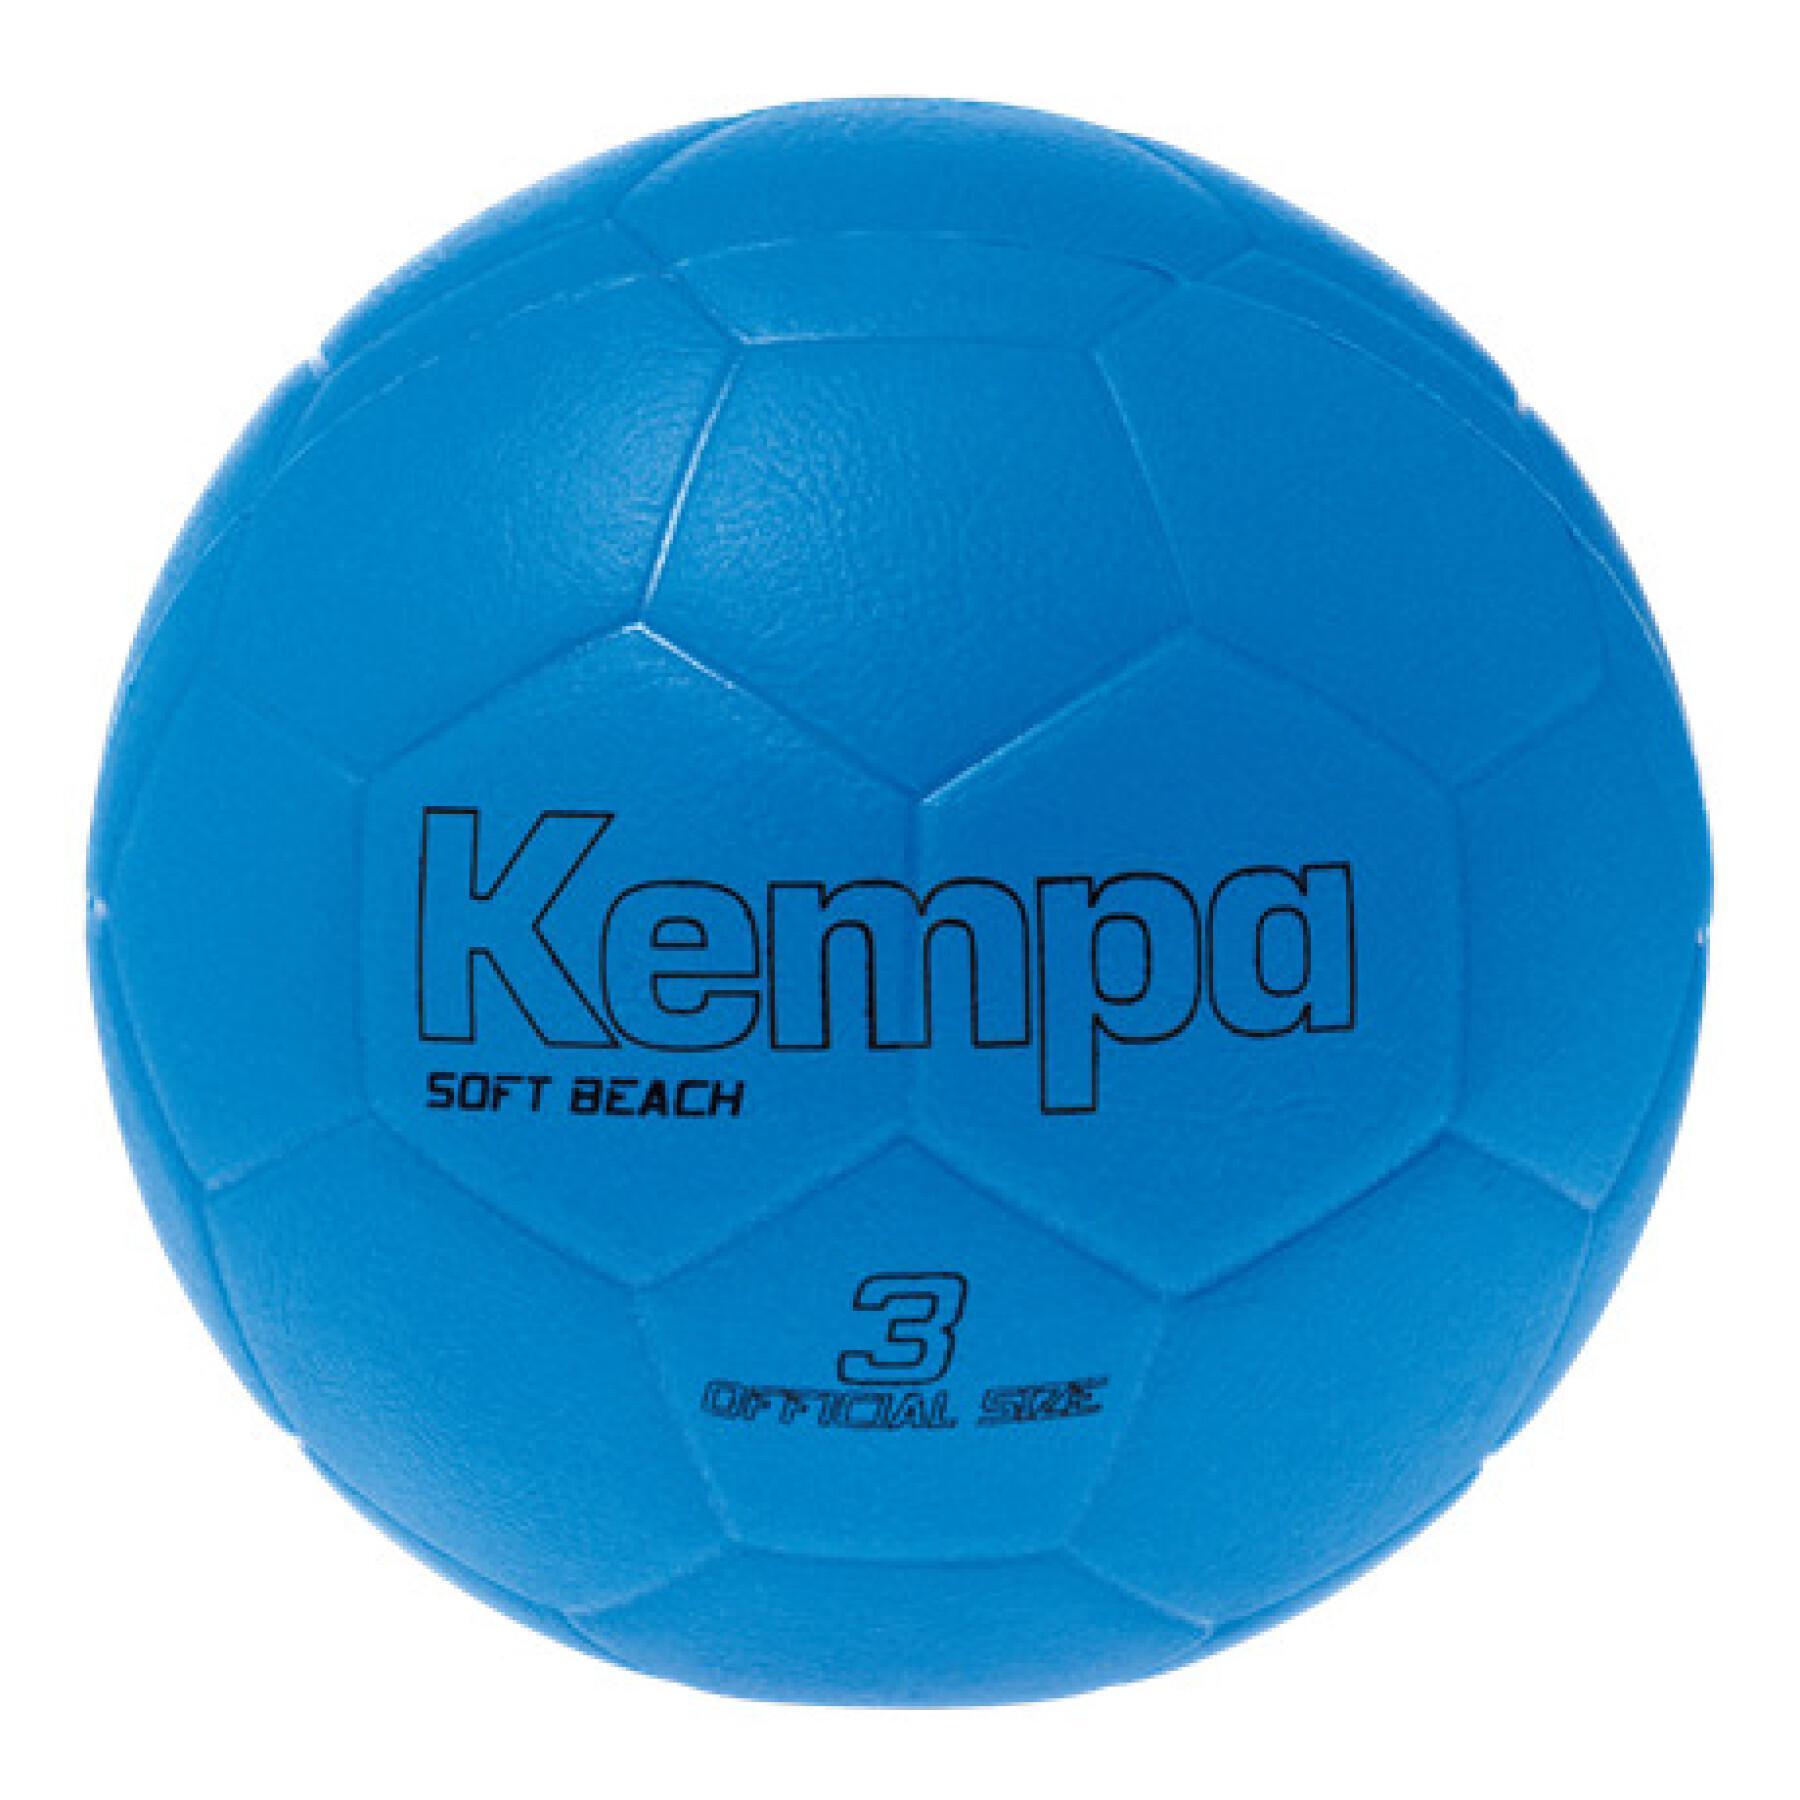 Miękka piłka plażowa Kempa Soft